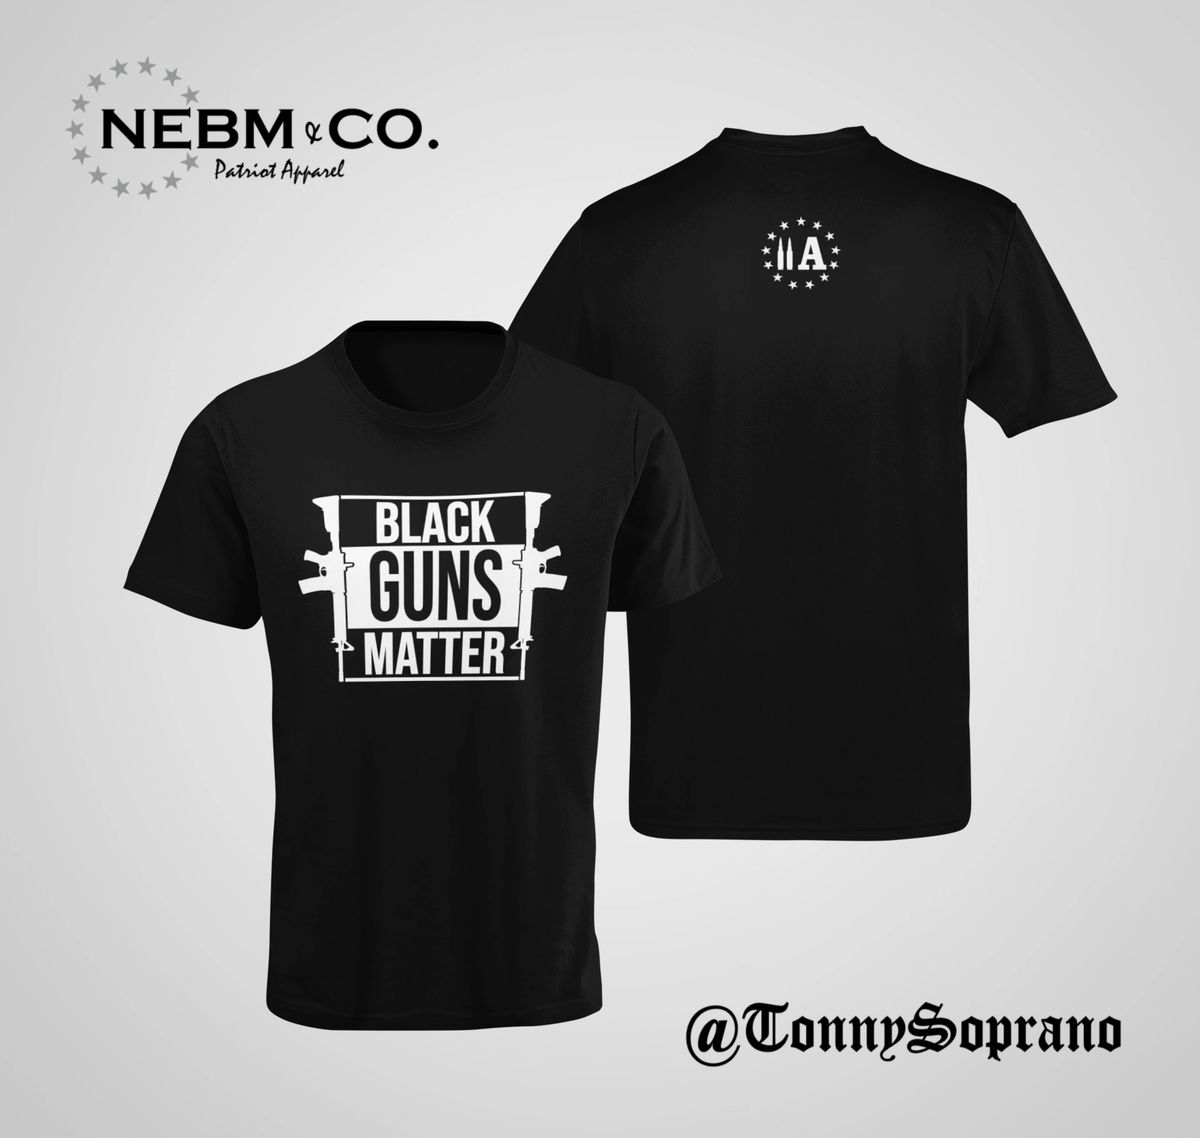 Black Guns Matter" T-Shirt Design